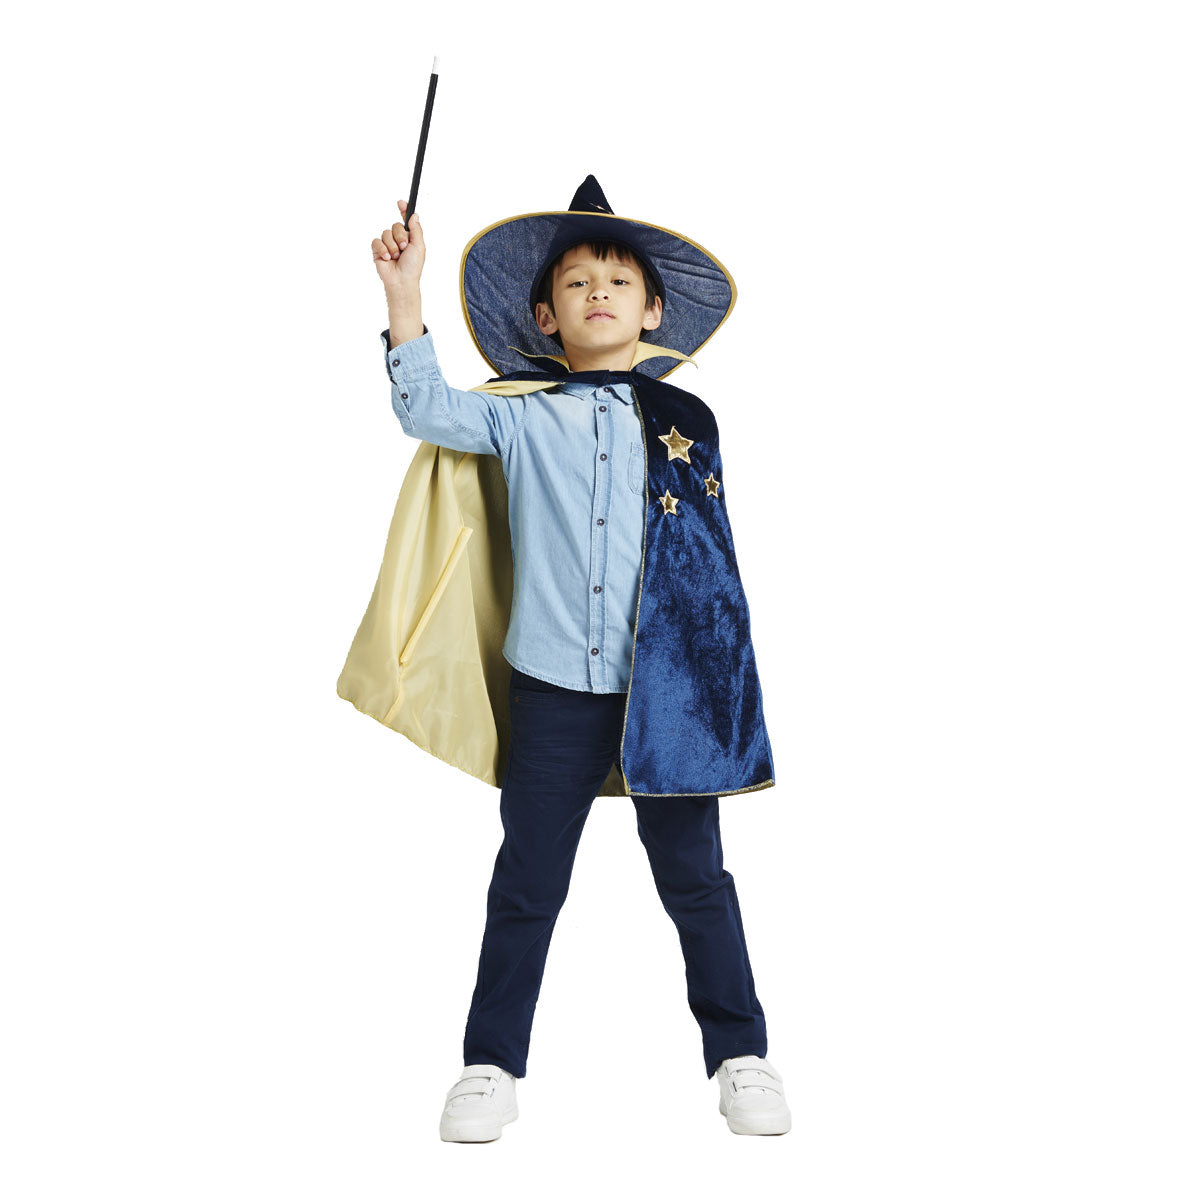 URAQT Deguisement Sorcier per Enfant, Costume de Magicien